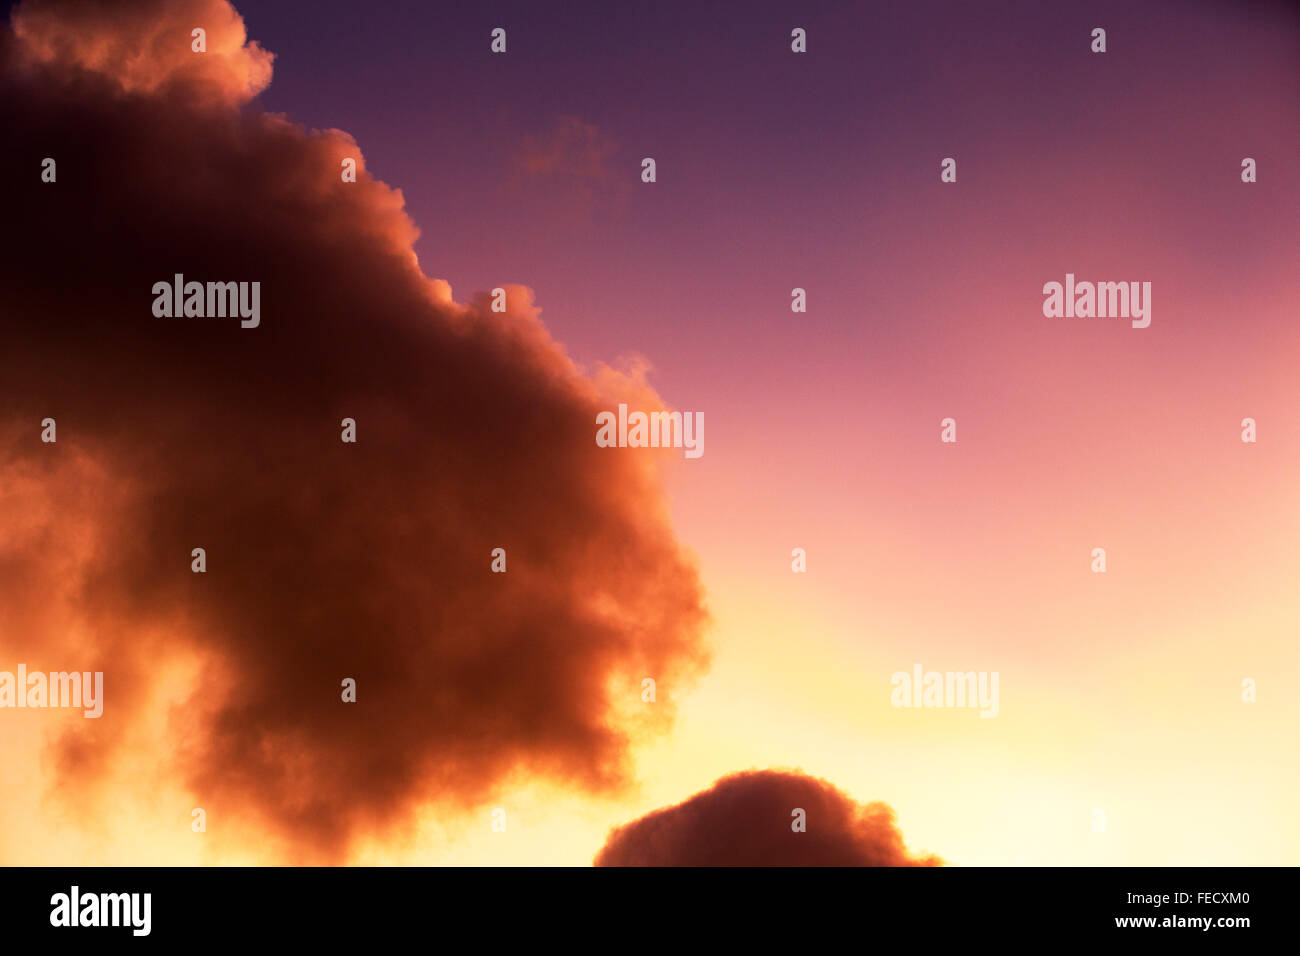 Les effets d'éclairage bizarre en nuages nacrés au coucher de soleil sur Ambleside, causé par la réfraction de cristaux de glace dans les nuages élevés affec Banque D'Images